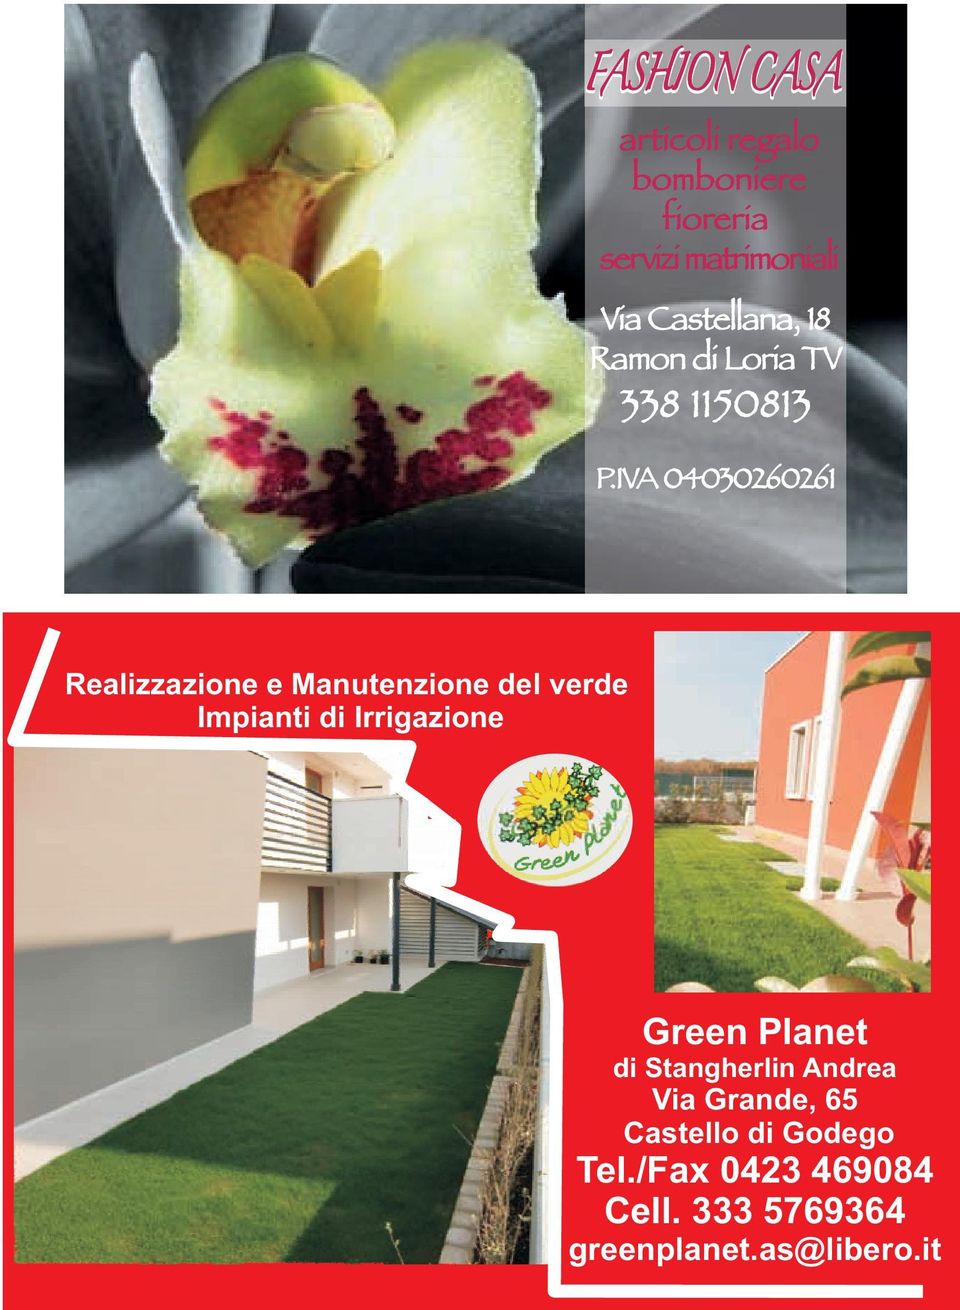 IVA 04030260261 Realizzazione e Manutenzione del verde Impianti di Irrigazione